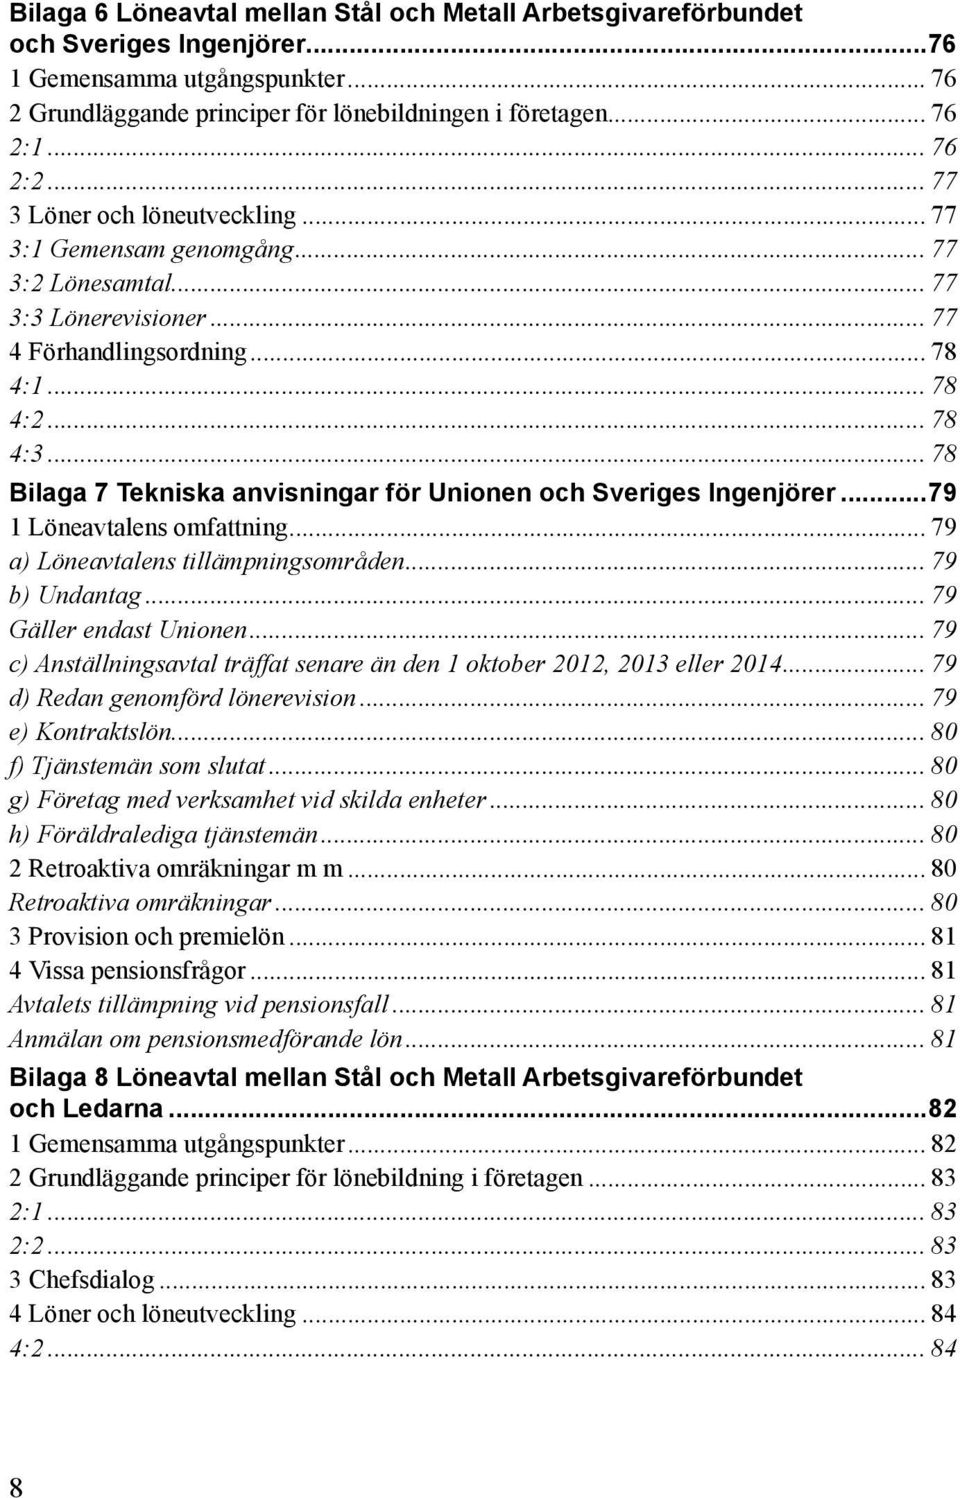 .. 78 Bilaga 7 Tekniska anvisningar för Unionen och Sveriges Ingenjörer...79 1 Löneavtalens omfattning... 79 a) Löneavtalens tillämpningsområden... 79 b) Undantag... 79 Gäller endast Unionen.